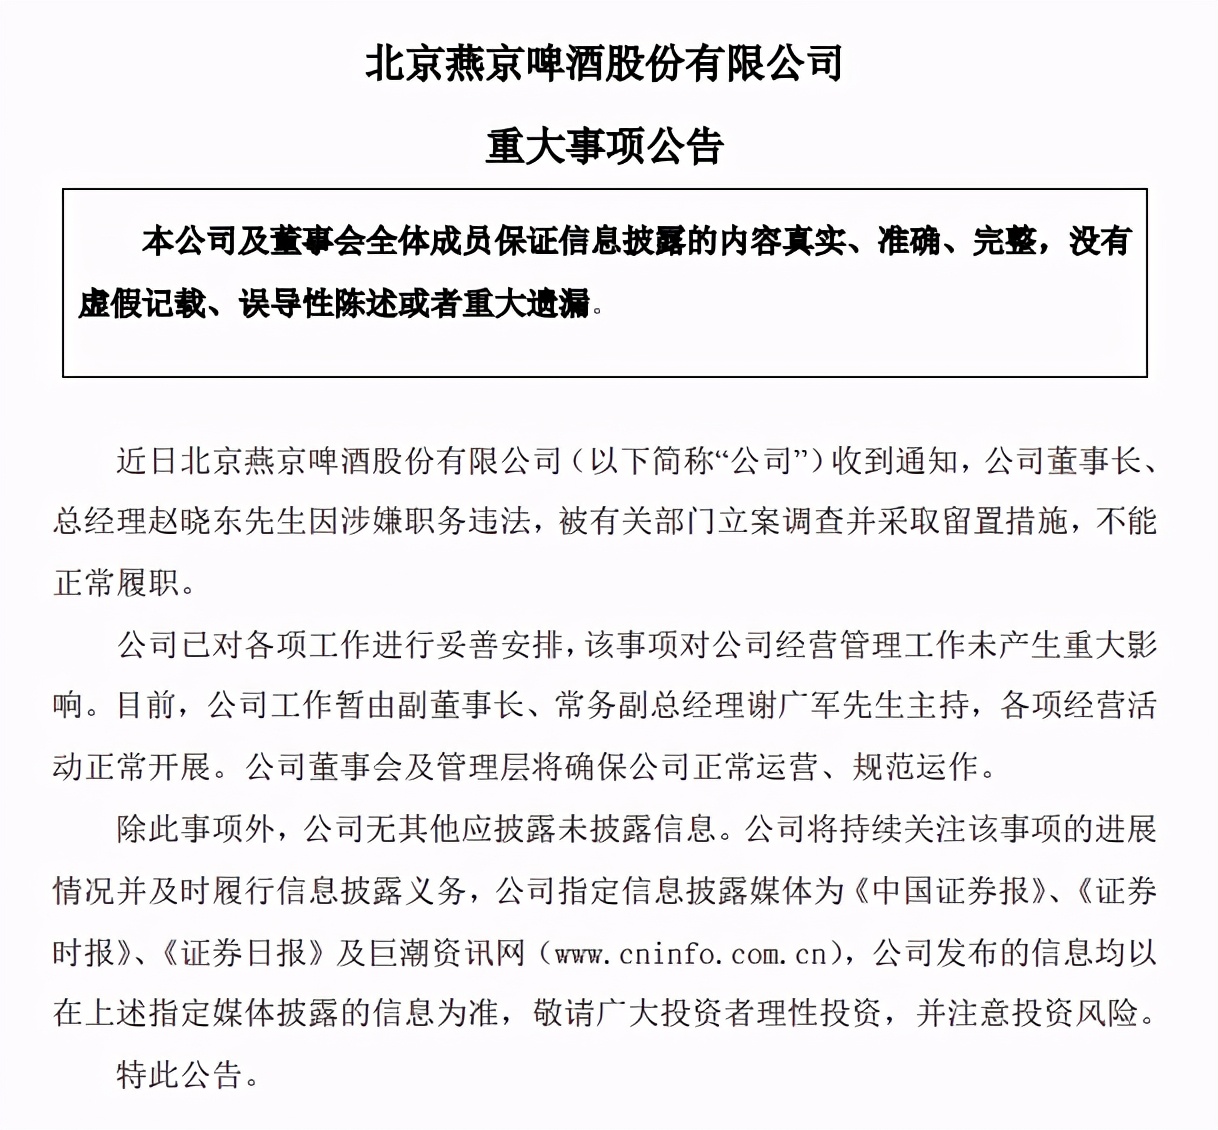 燕京啤酒董事长赵晓东被抓：公司营业总收入6年减少近20亿元